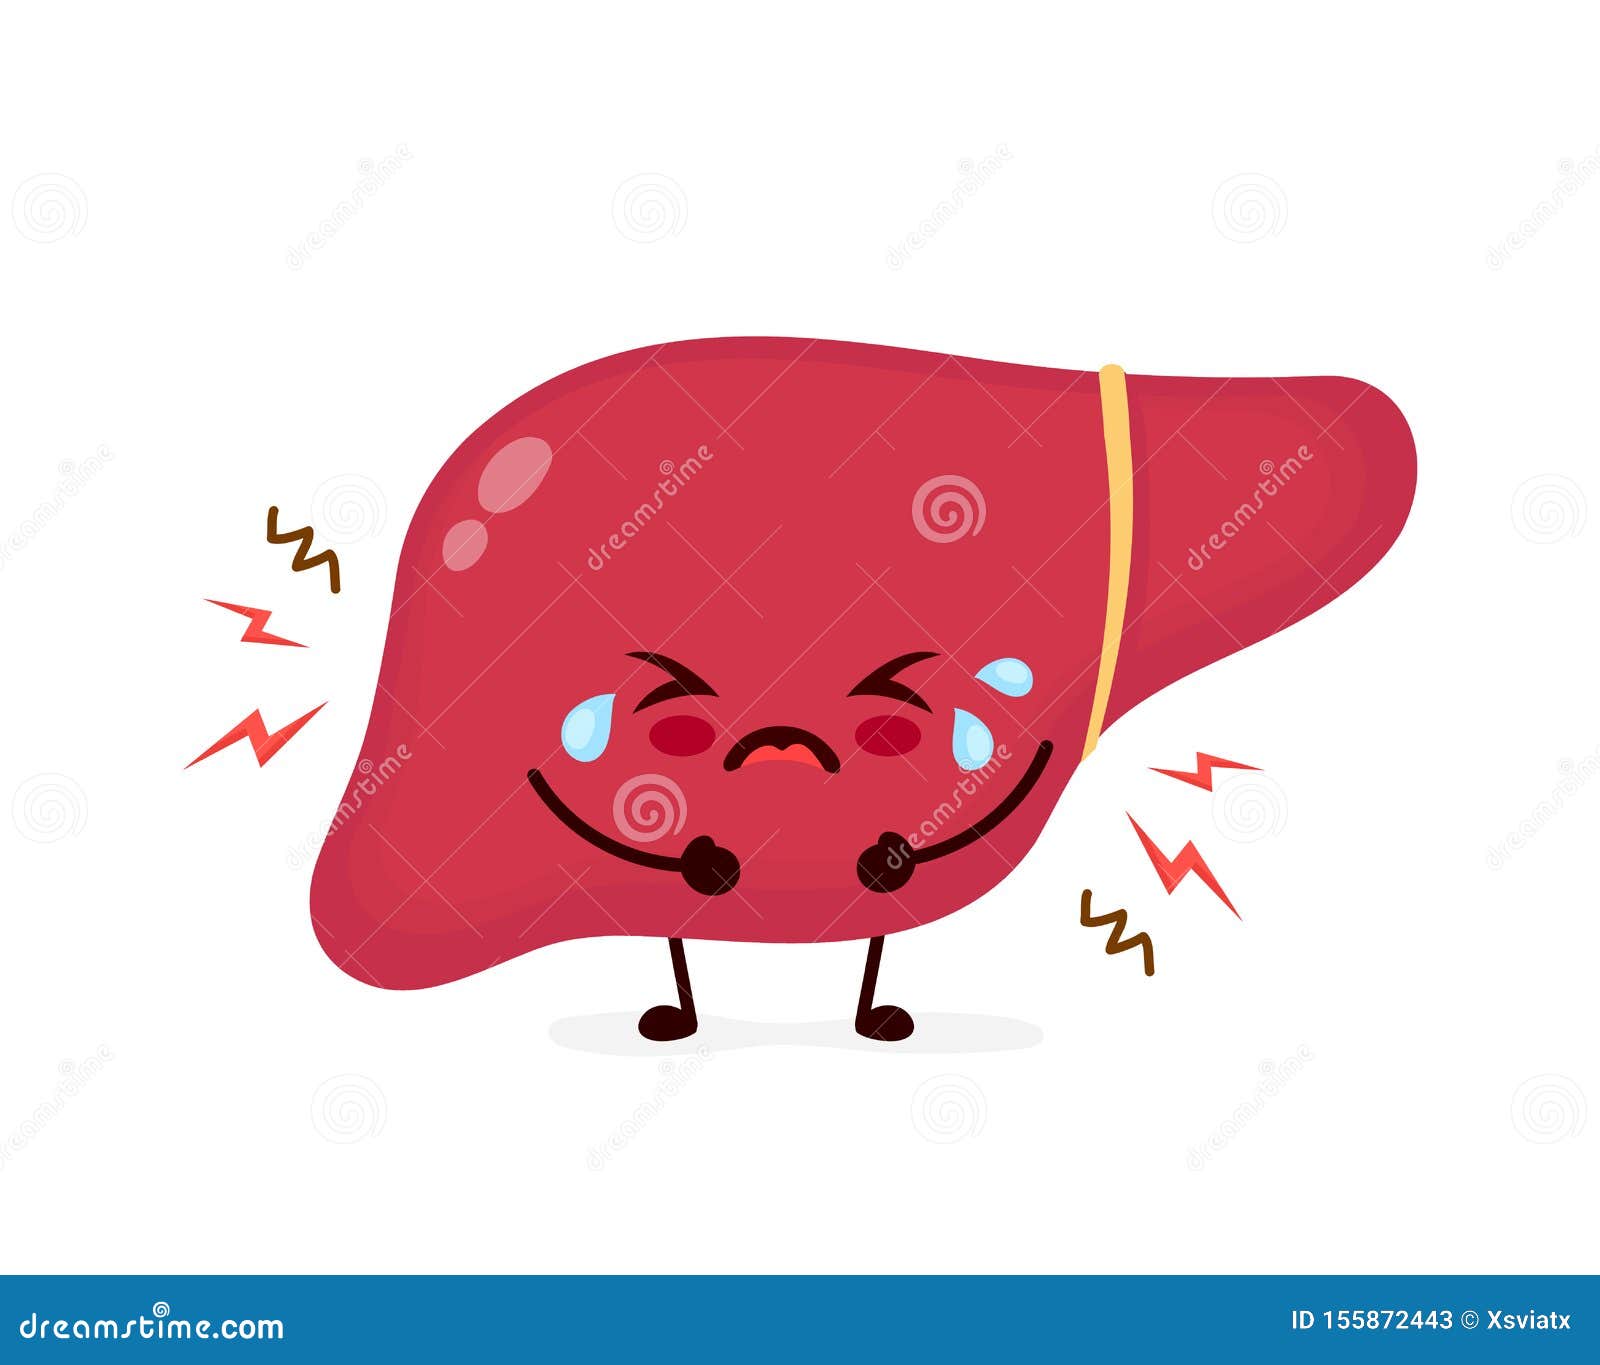 Sad Liver Stock Illustrations – 345 Sad Liver Stock Illustrations, Vectors  & Clipart - Dreamstime